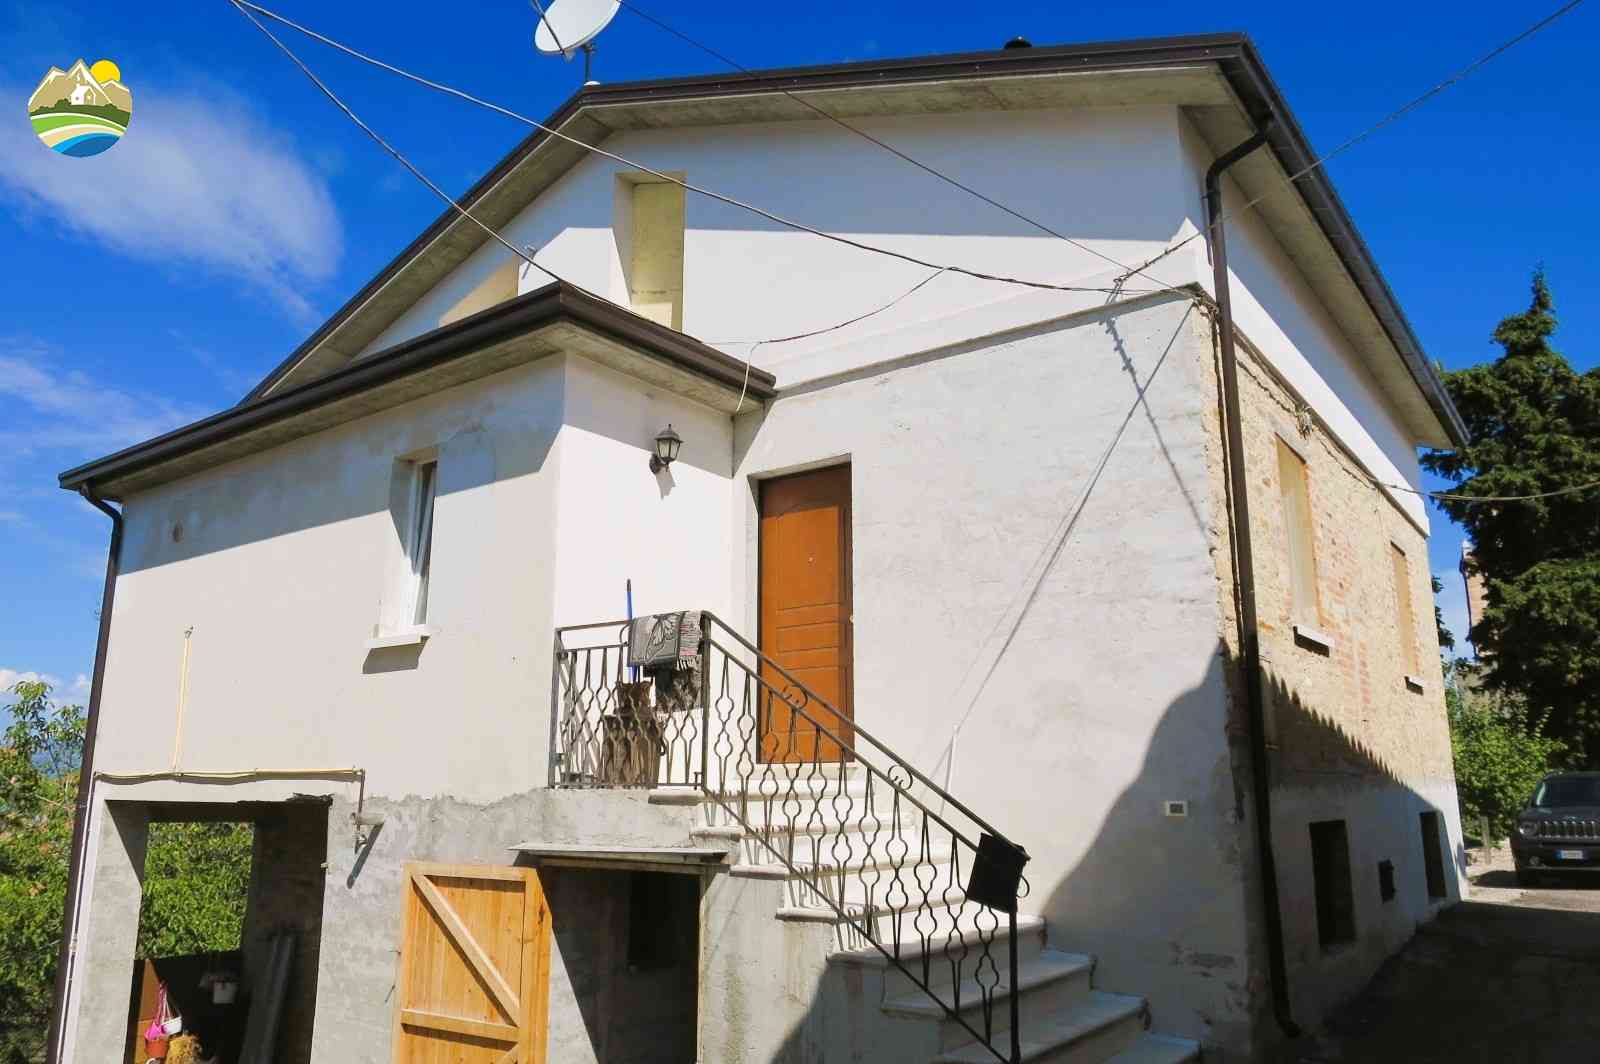 Townhouse Townhouse for sale Cellino Attanasio (TE), Casa del Barone - Cellino Attanasio - EUR 105.105 10